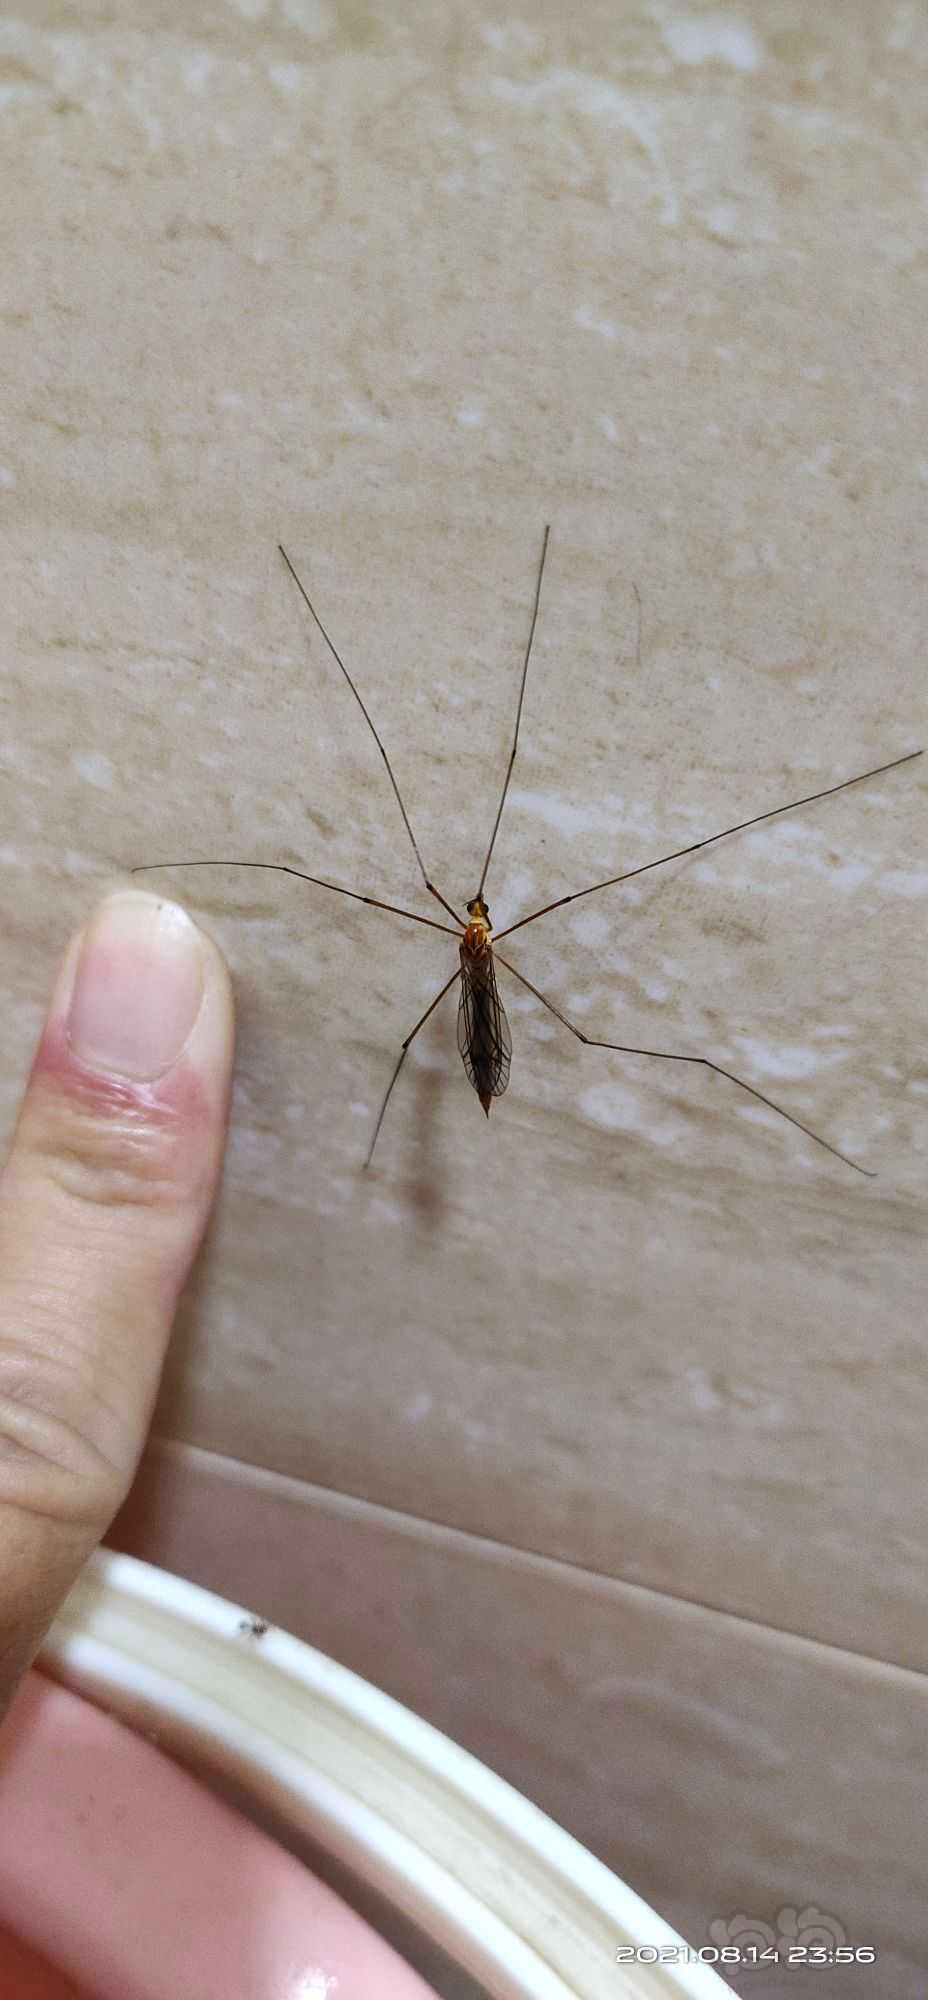 这是蚊子吗？-图1